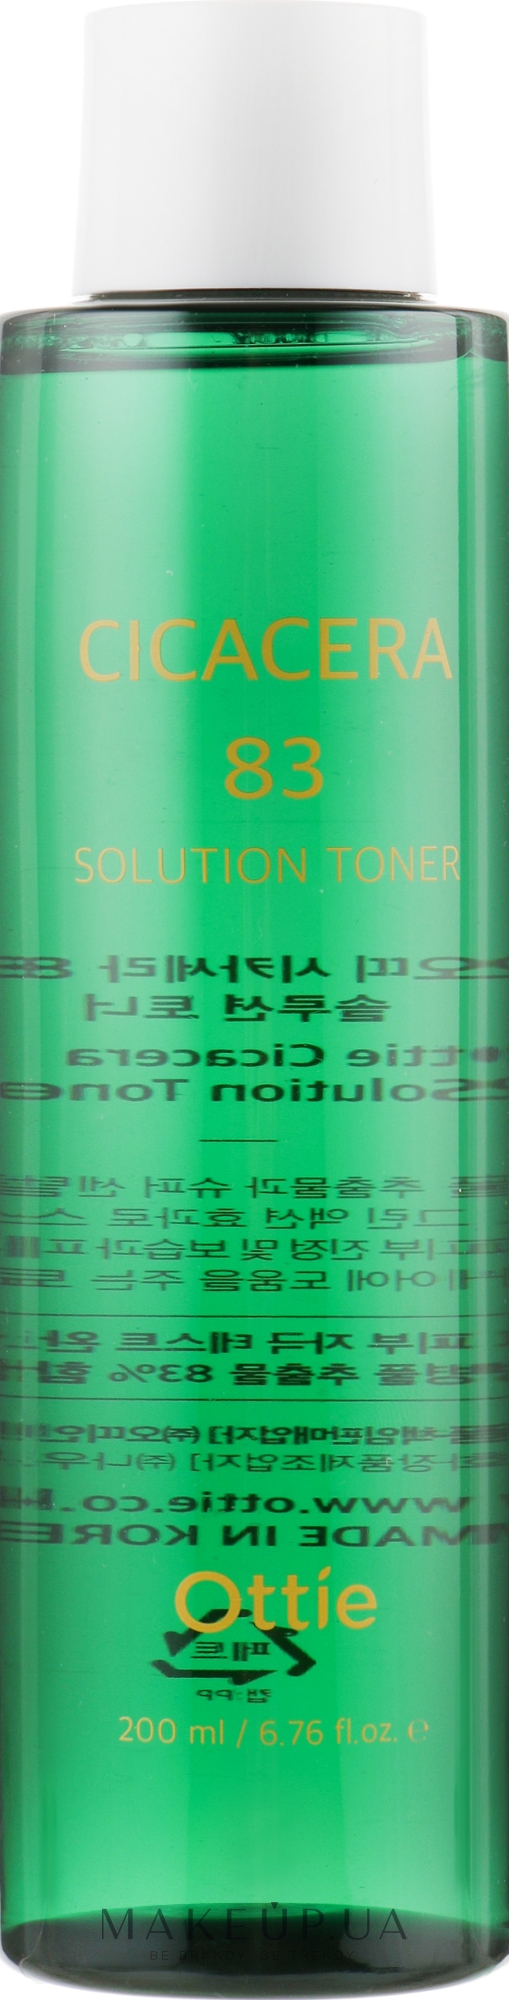 Заспокійливий тонер для звуження пор - Ottie Cicacera 83 Solution Toner — фото 200ml